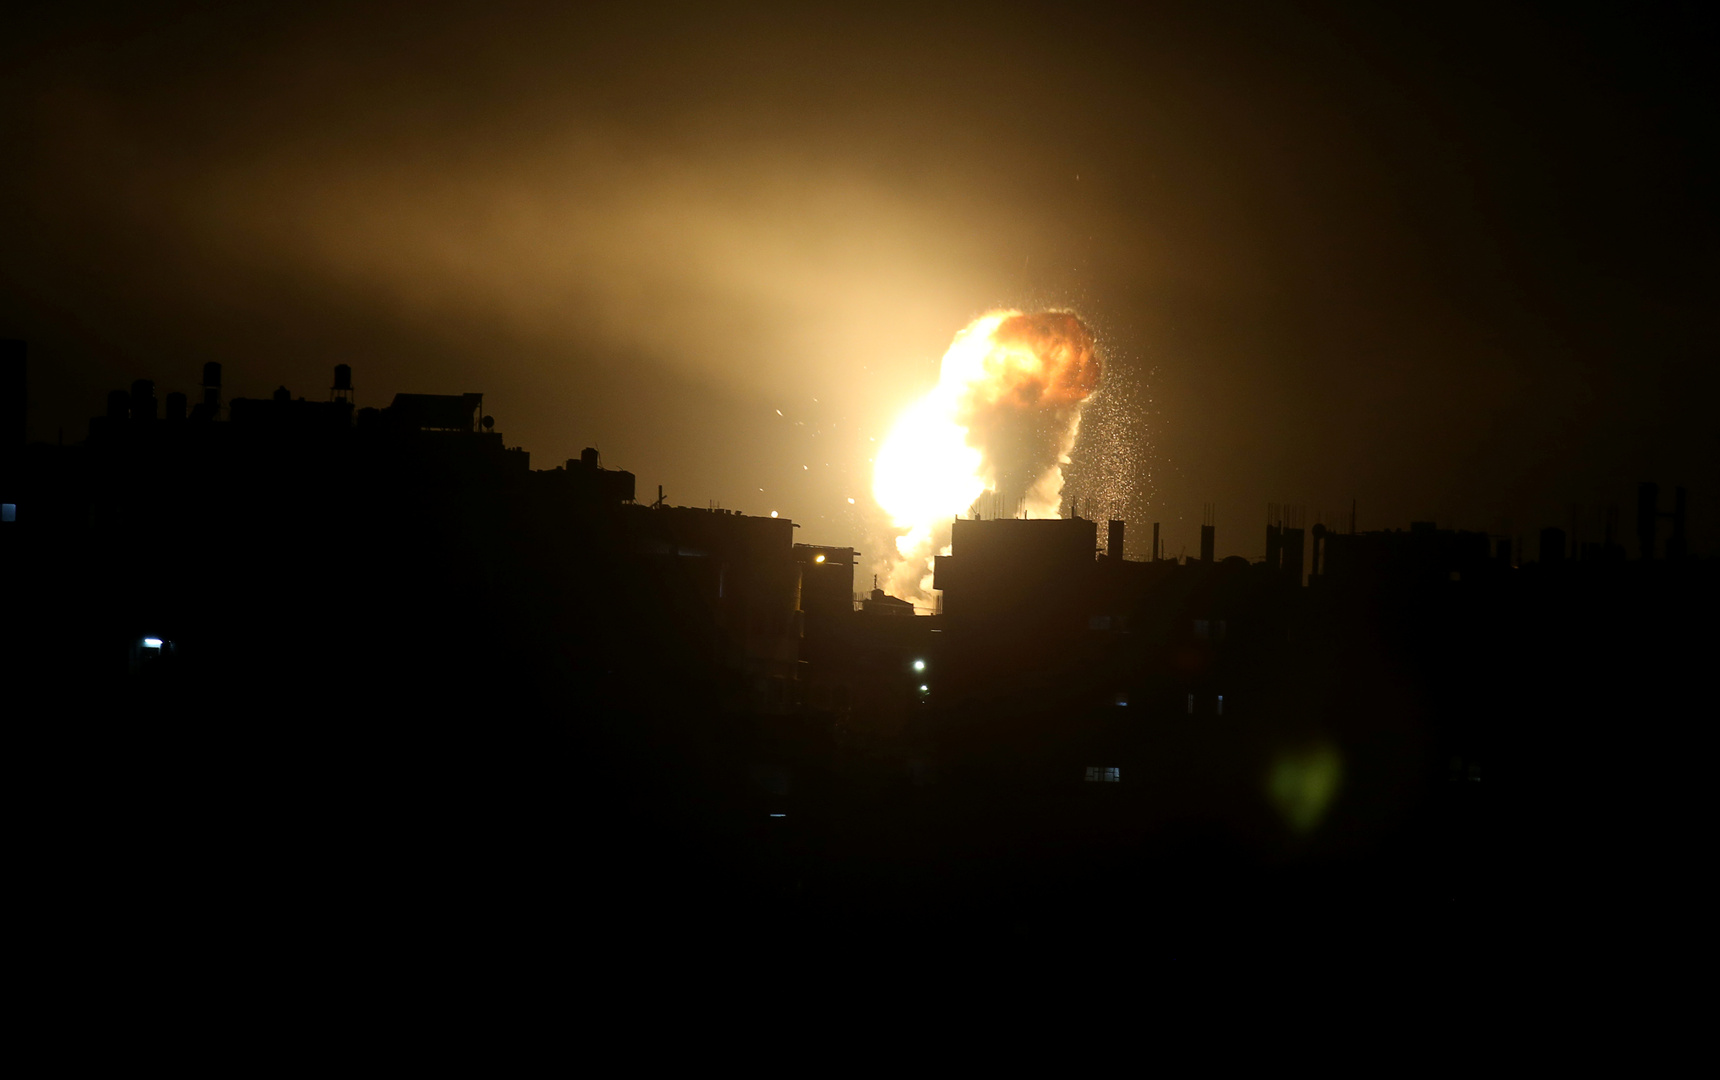 انفجار قوي يهز موقعا لاختبار الصواريخ وسط إسرائيل